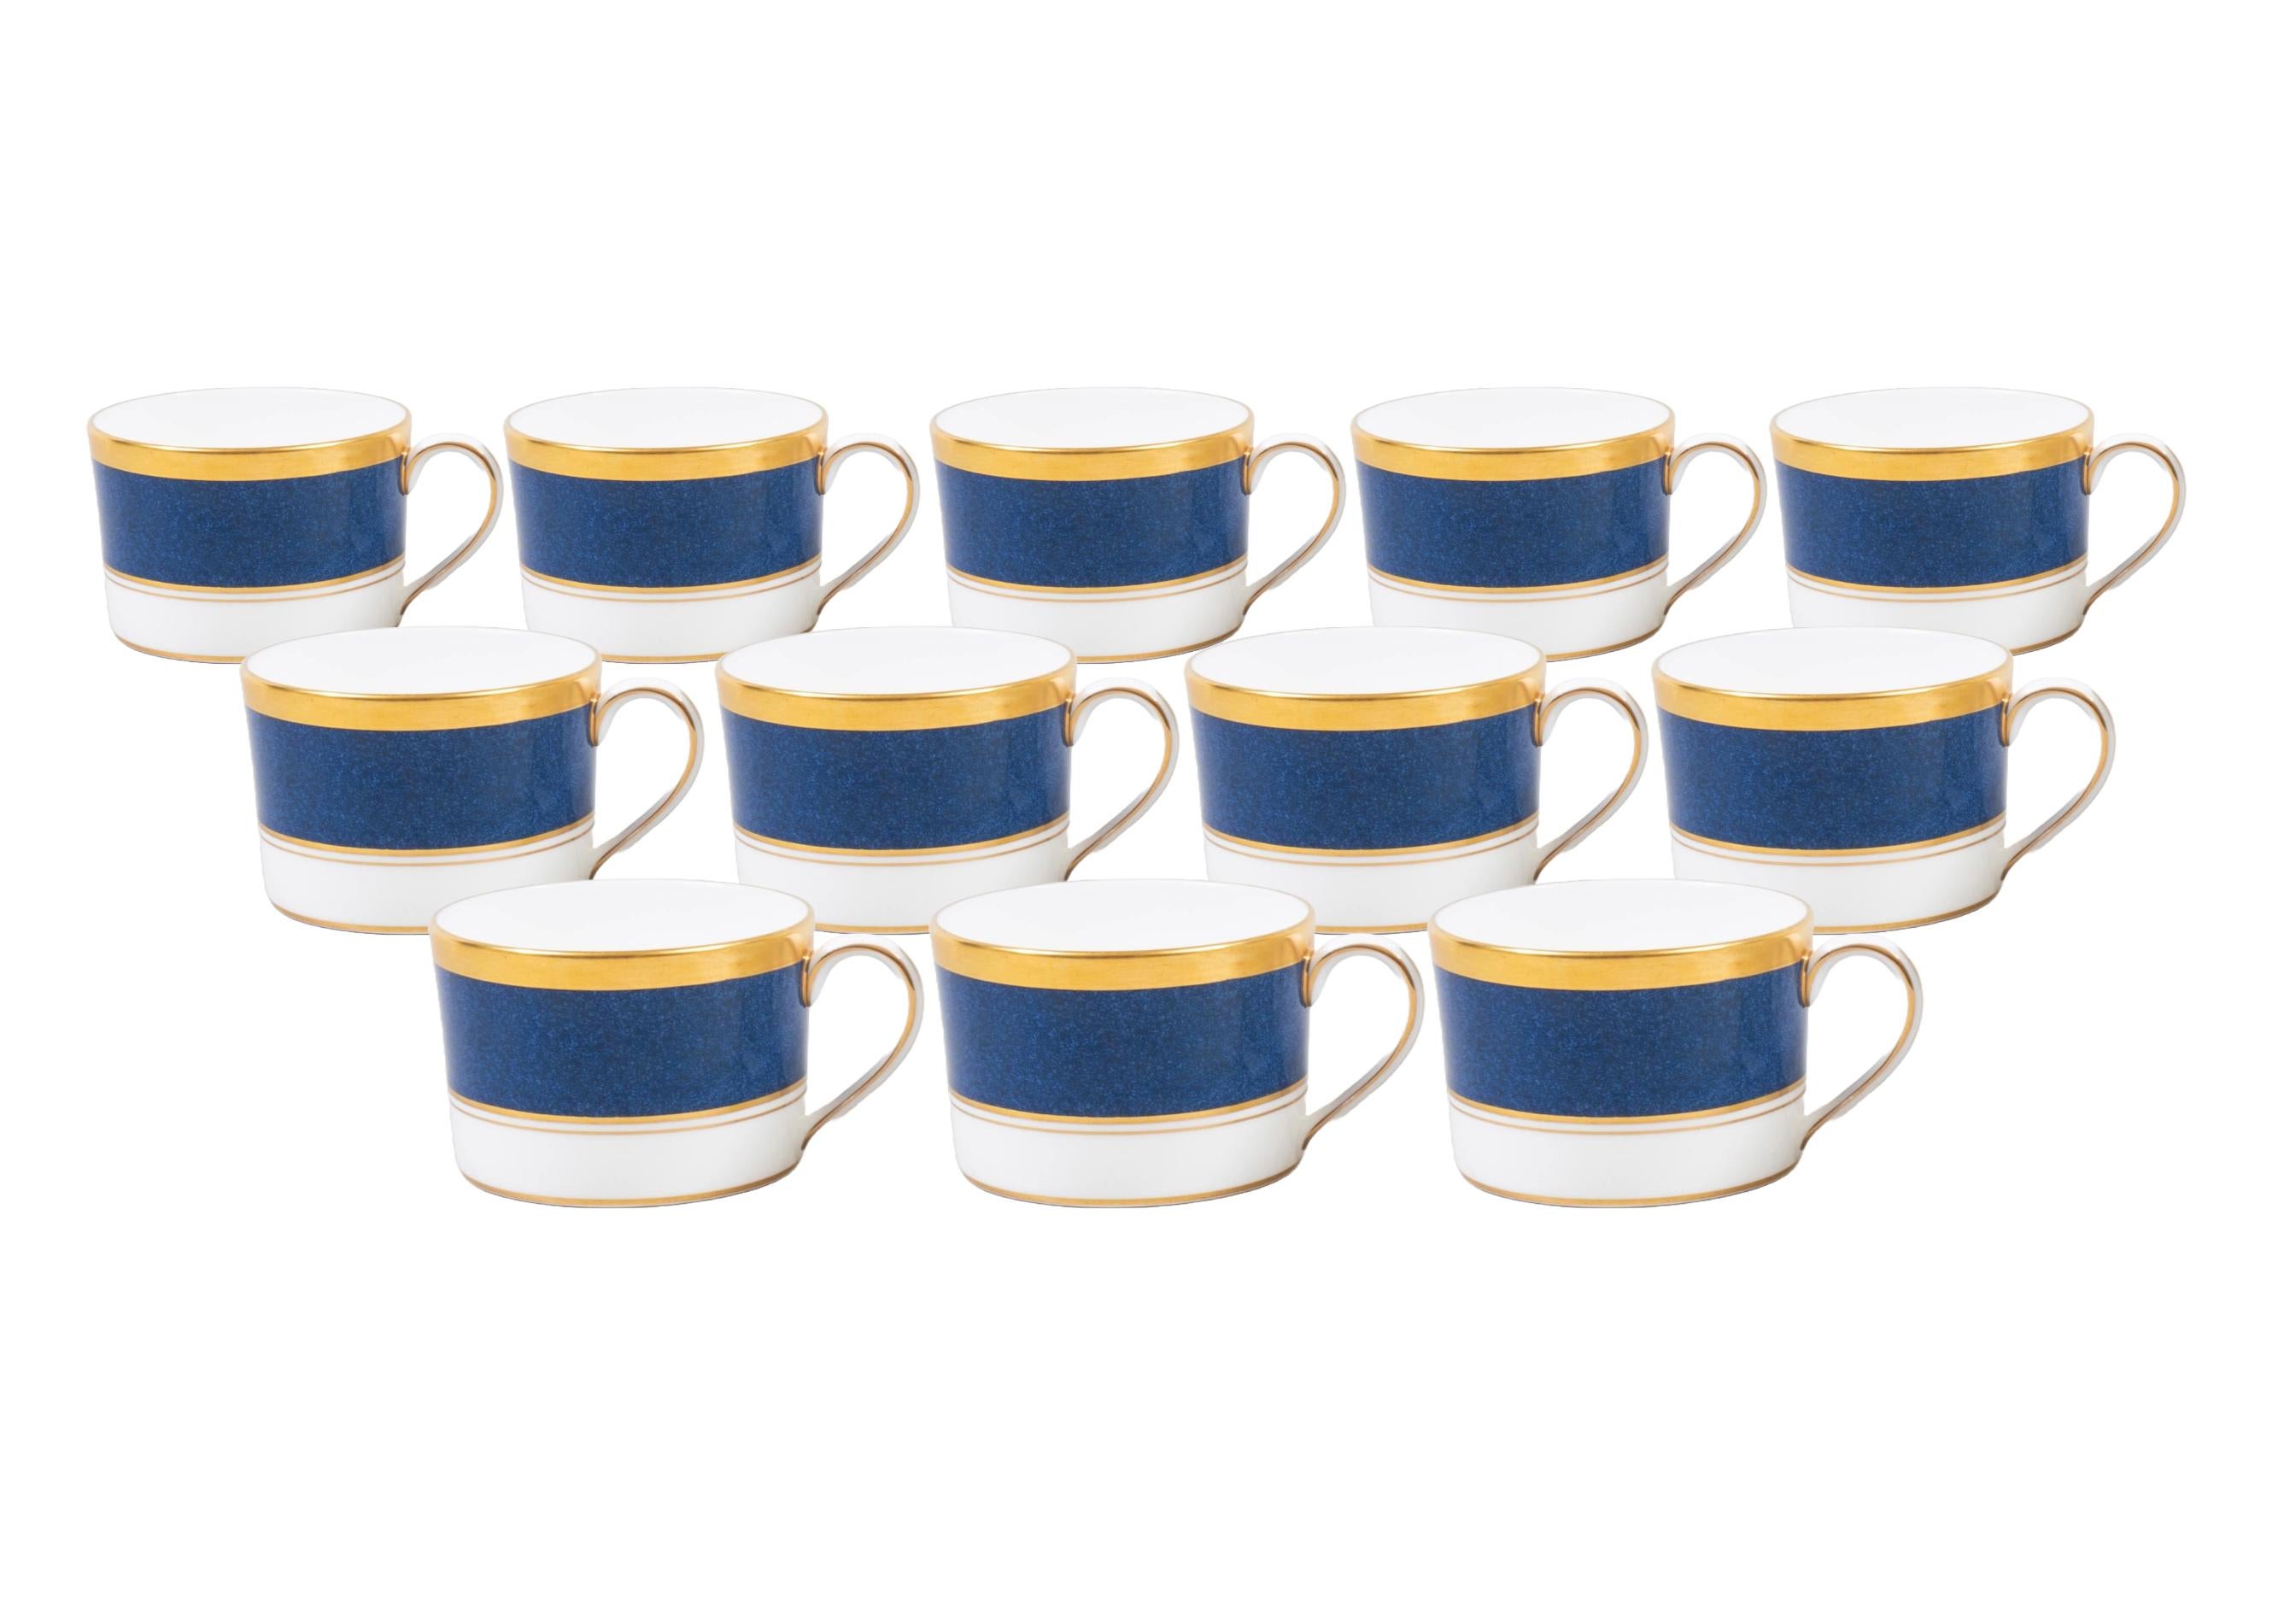 Doré Service de table complet en porcelaine anglaise pour 12 personnes avec service à café/thé en vente